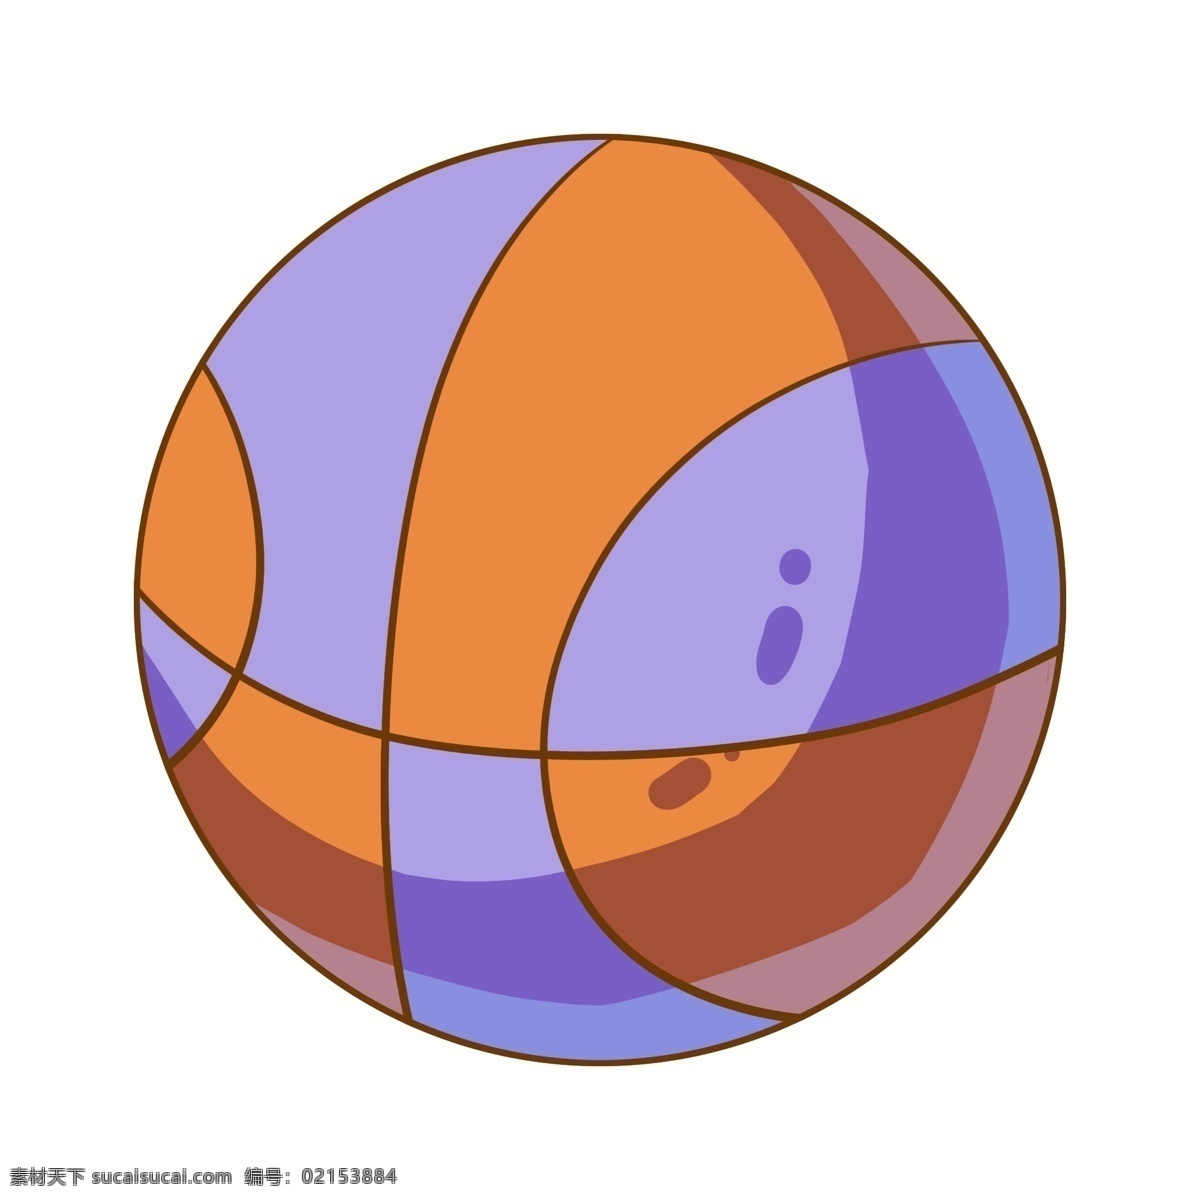 紫色 圆形 篮球 插画 紫色的篮球 卡通插画 篮球插画 皮球插画 篮球运动 篮球健身 棕色的篮球